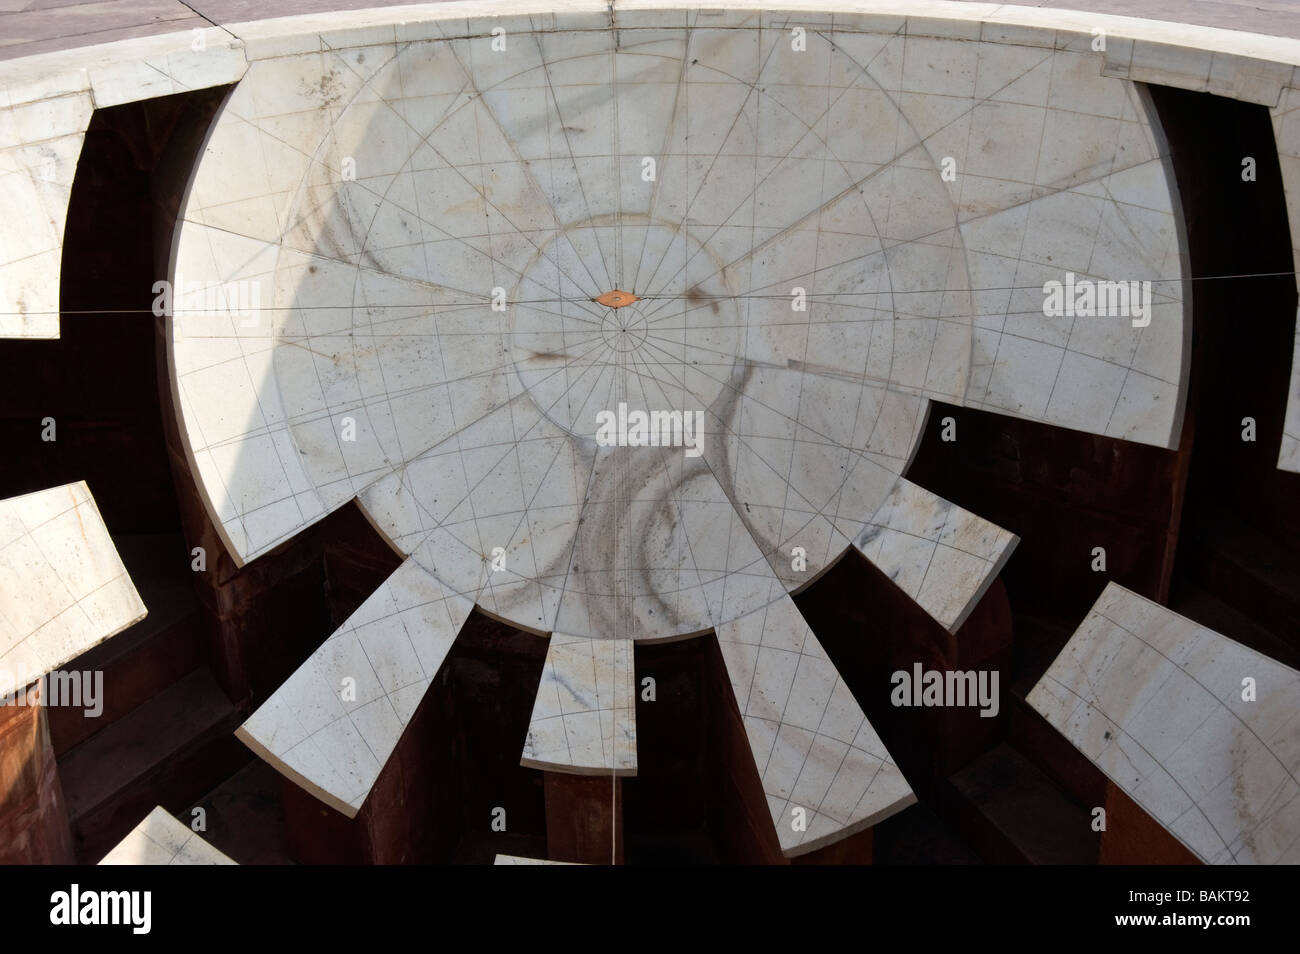 Jantar Mantar Jai Singh s II observatory Jai Prakash Yantra Map of the sky Jaipur India Stock Photo